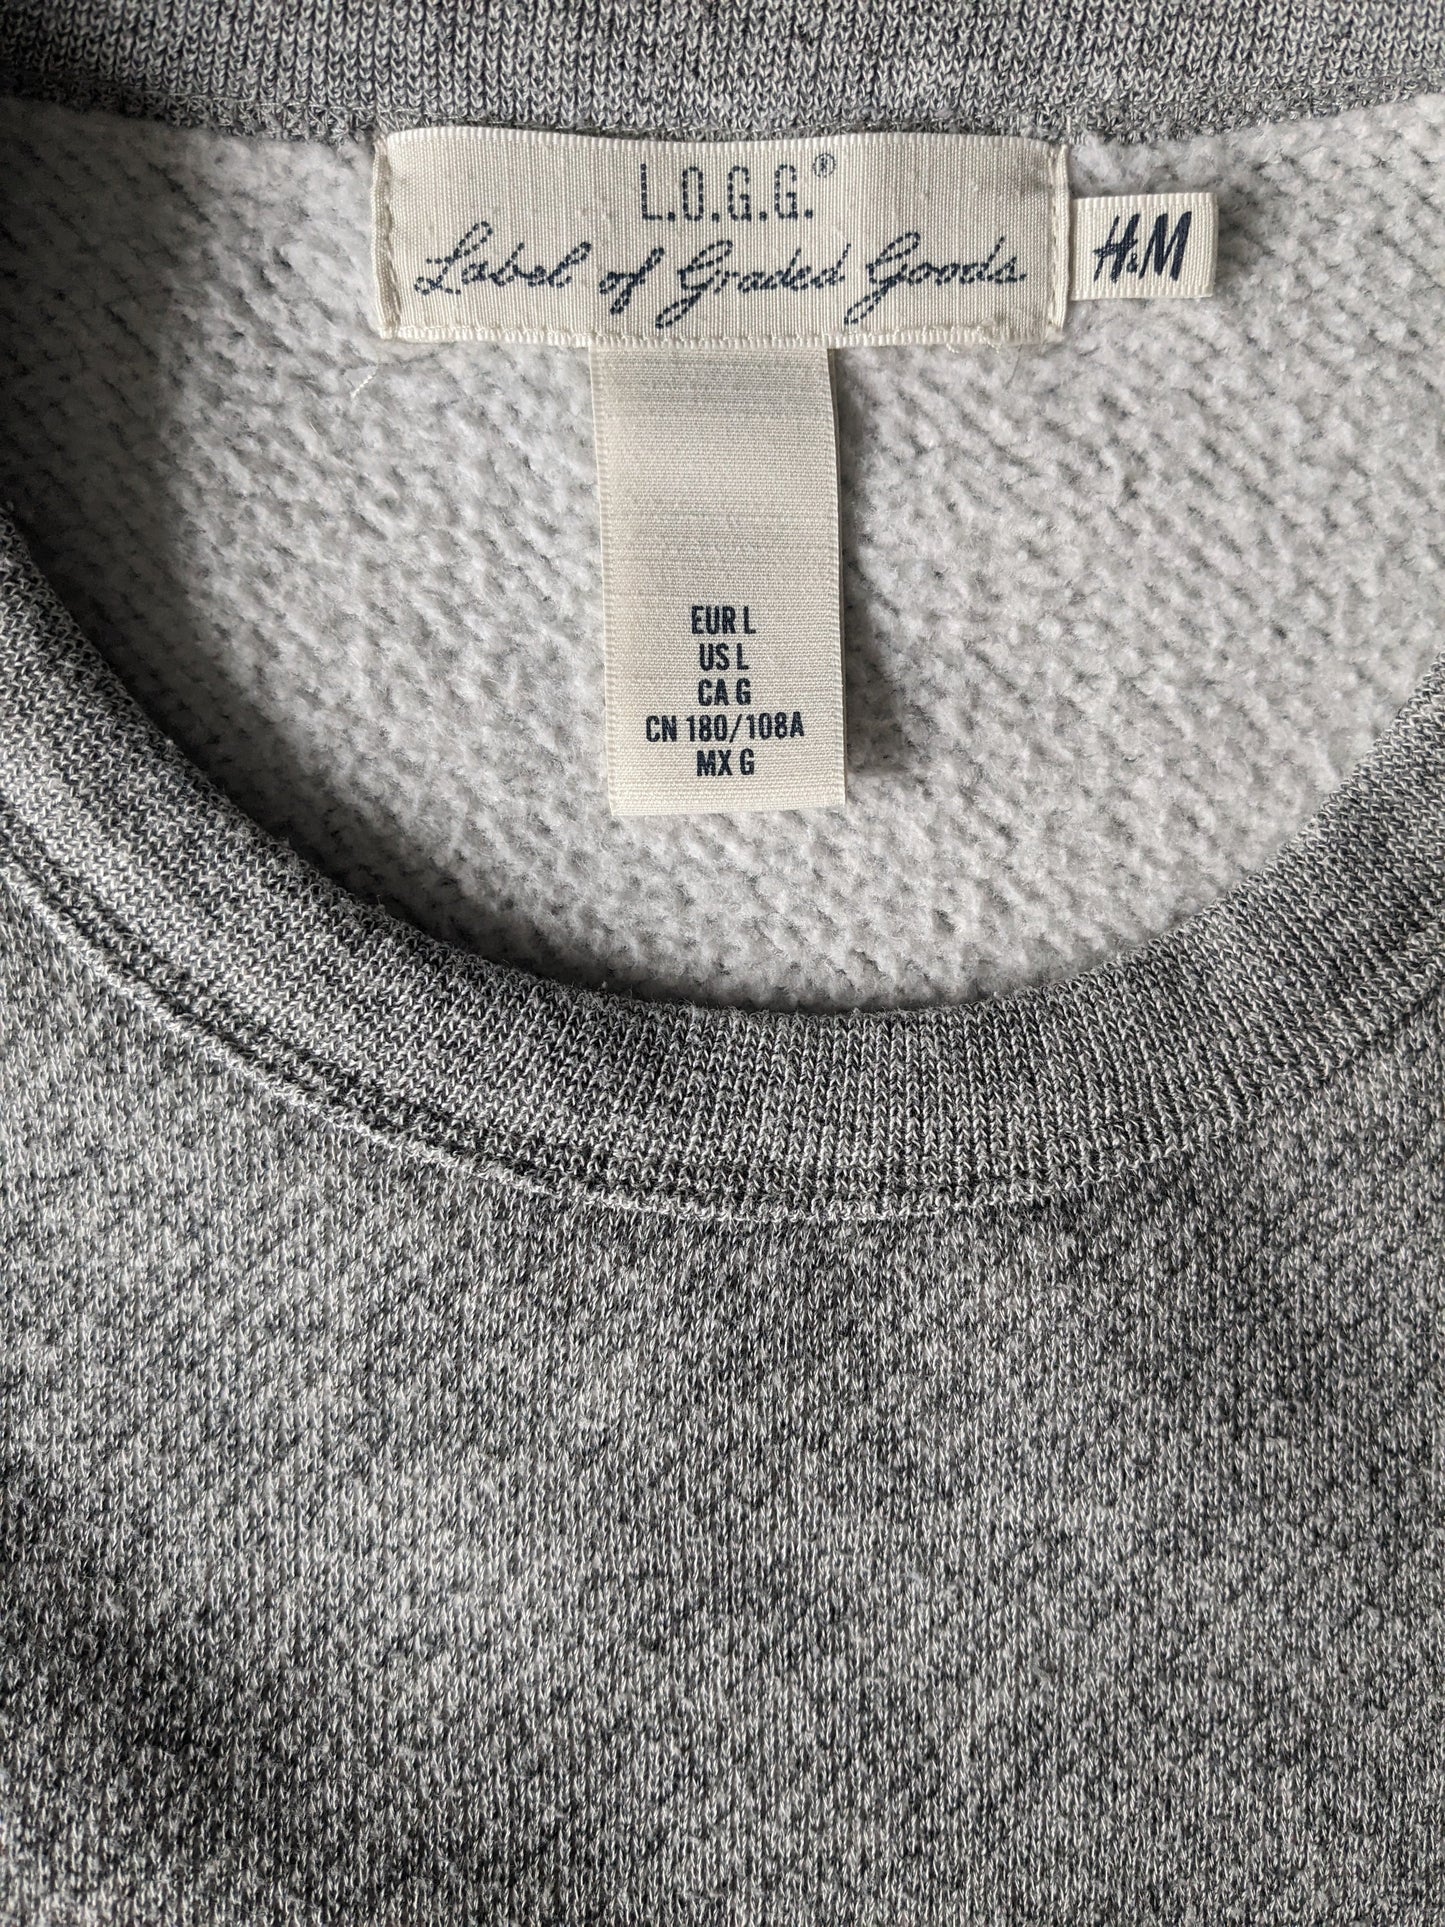 Suéter H&M. Tamaño mixto gris L.